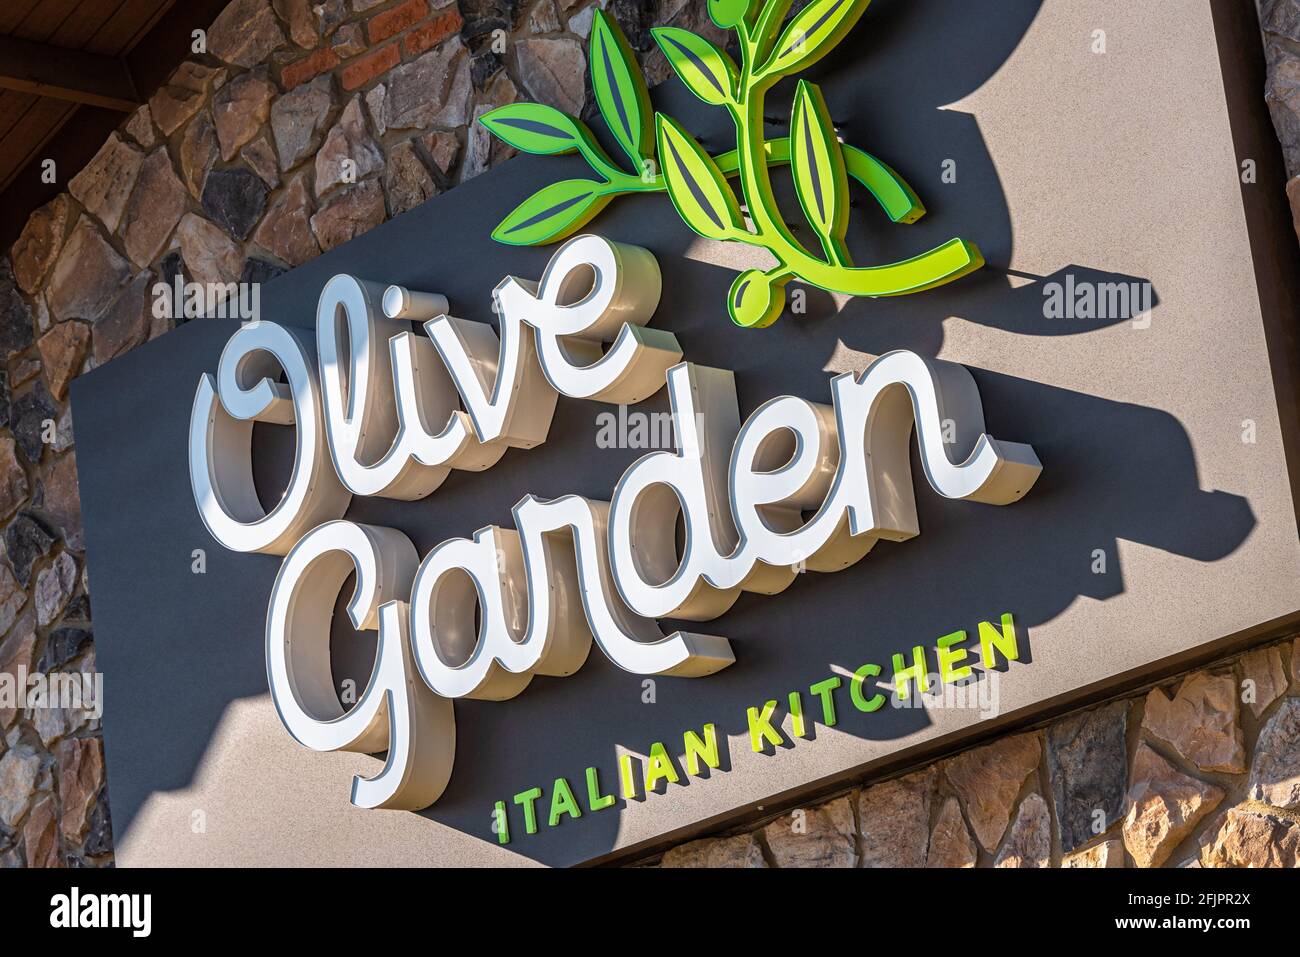 Olive Garden Italian Kitchen, une chaîne de restaurants décontractés de cuisine italienne-américaine et filiale de Darden restaurants, Inc. (USA) Banque D'Images